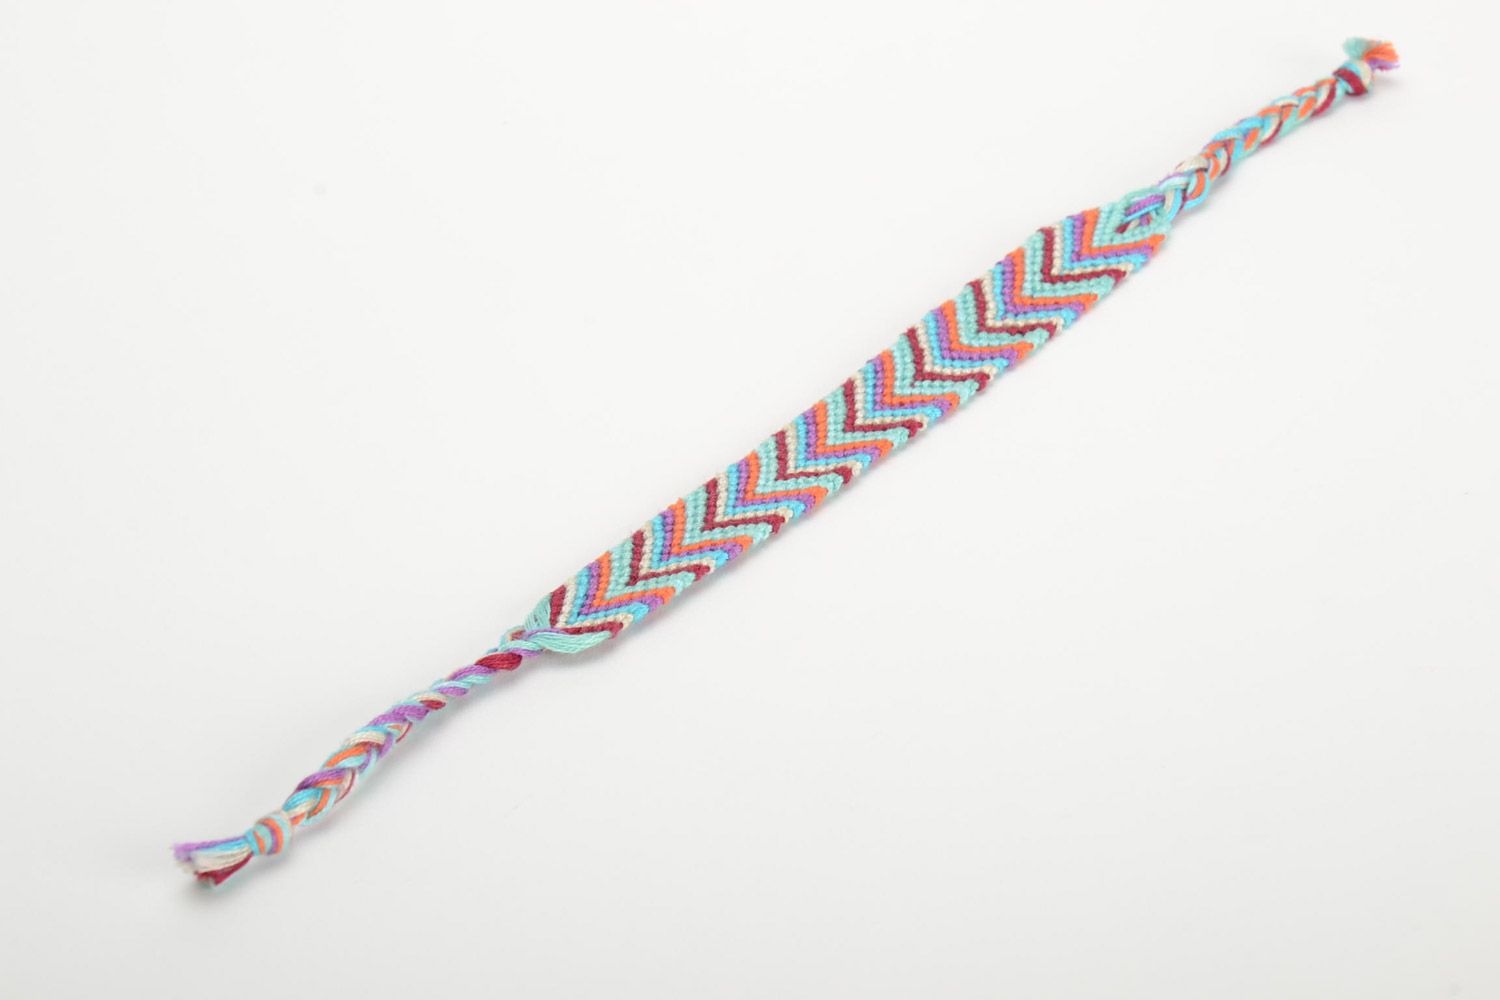 Текстильный браслет из ниток наручный цвветной необычный стильный ручная работа фото 2